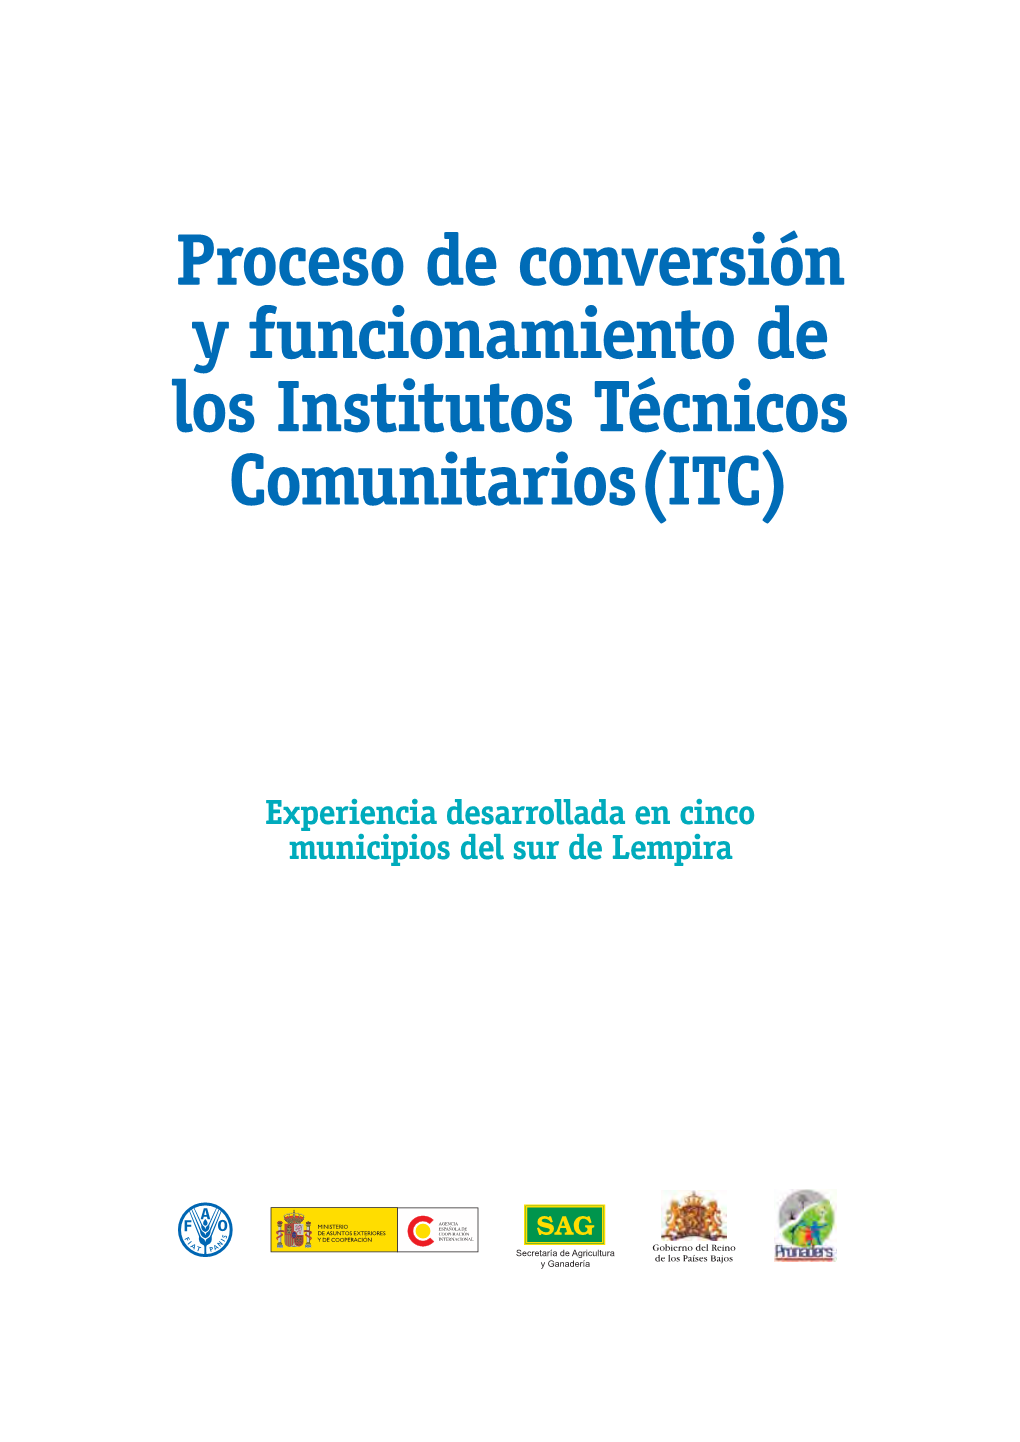 Proceso De Conversión Y Funcionamiento De Los Institutos Técnicos Comunitarios(ITC)